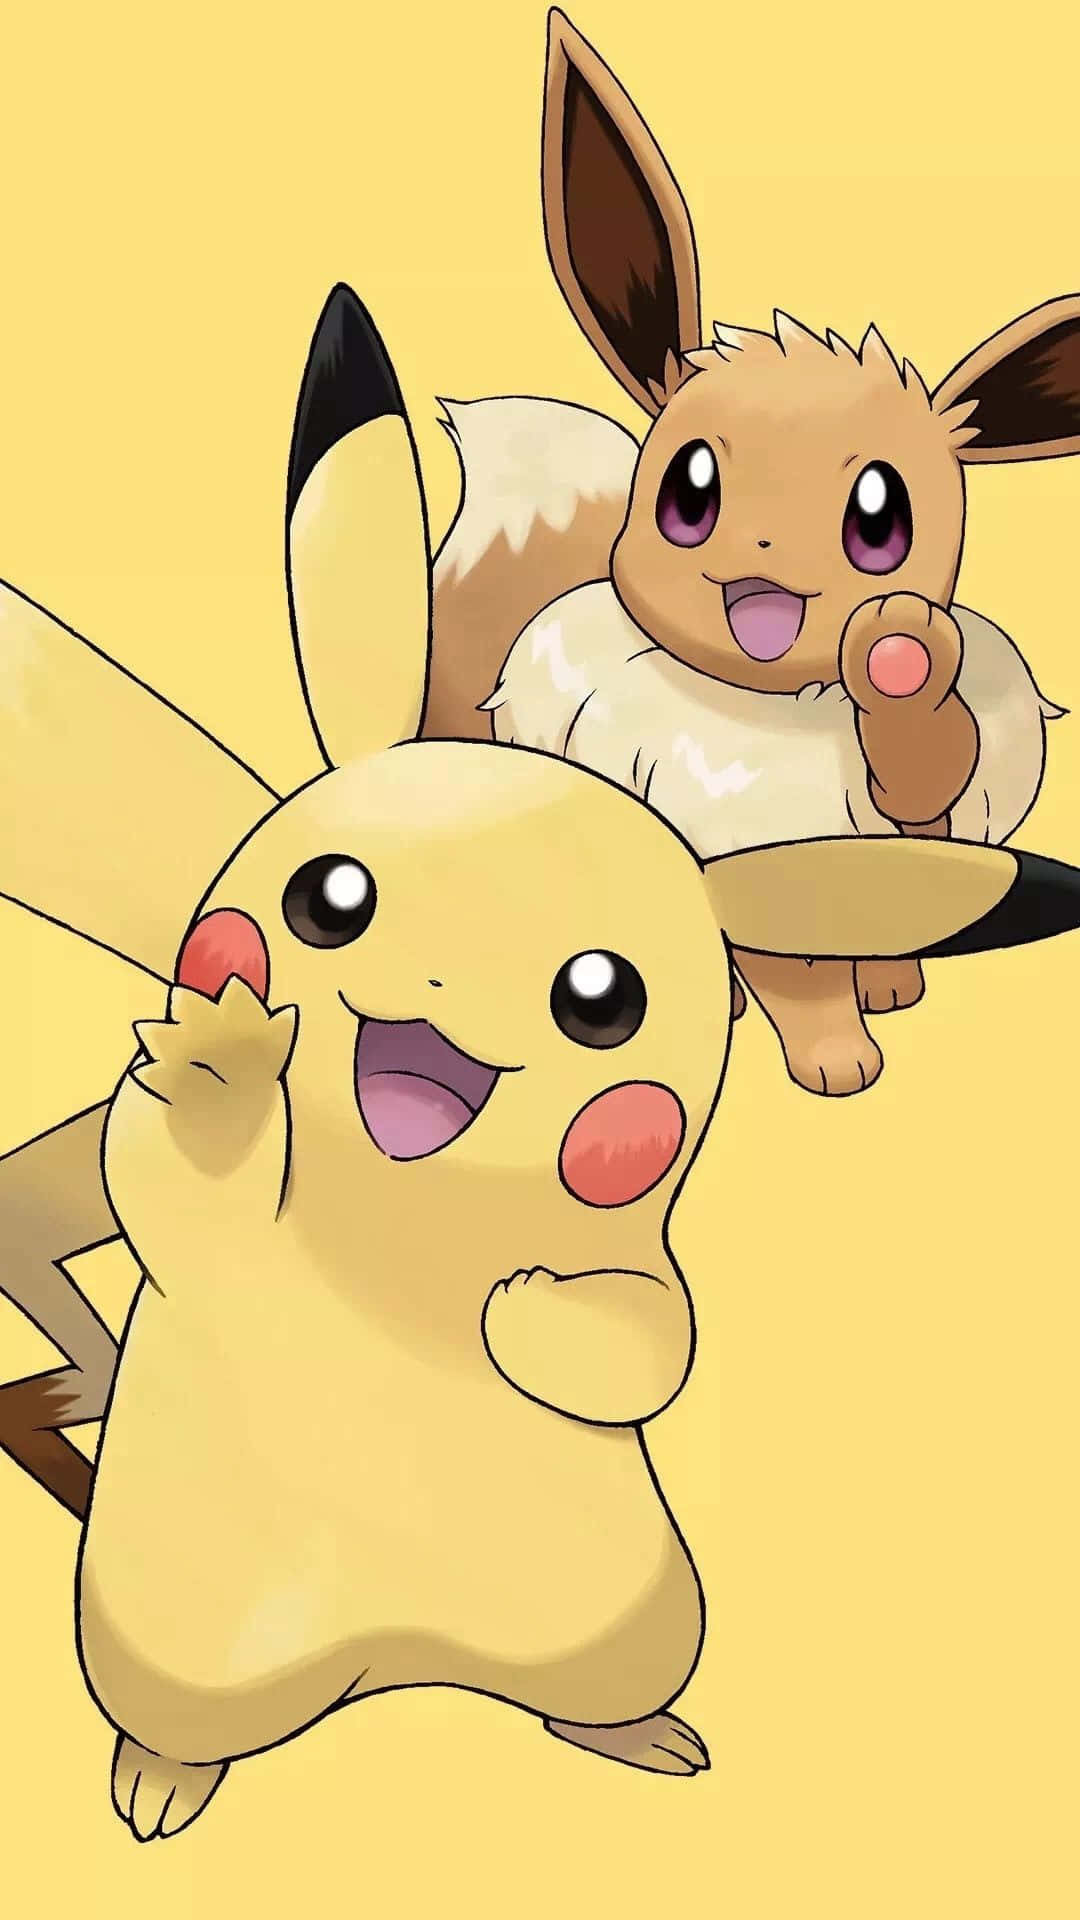 Pokémonpikachu Und Pikachu. Wallpaper